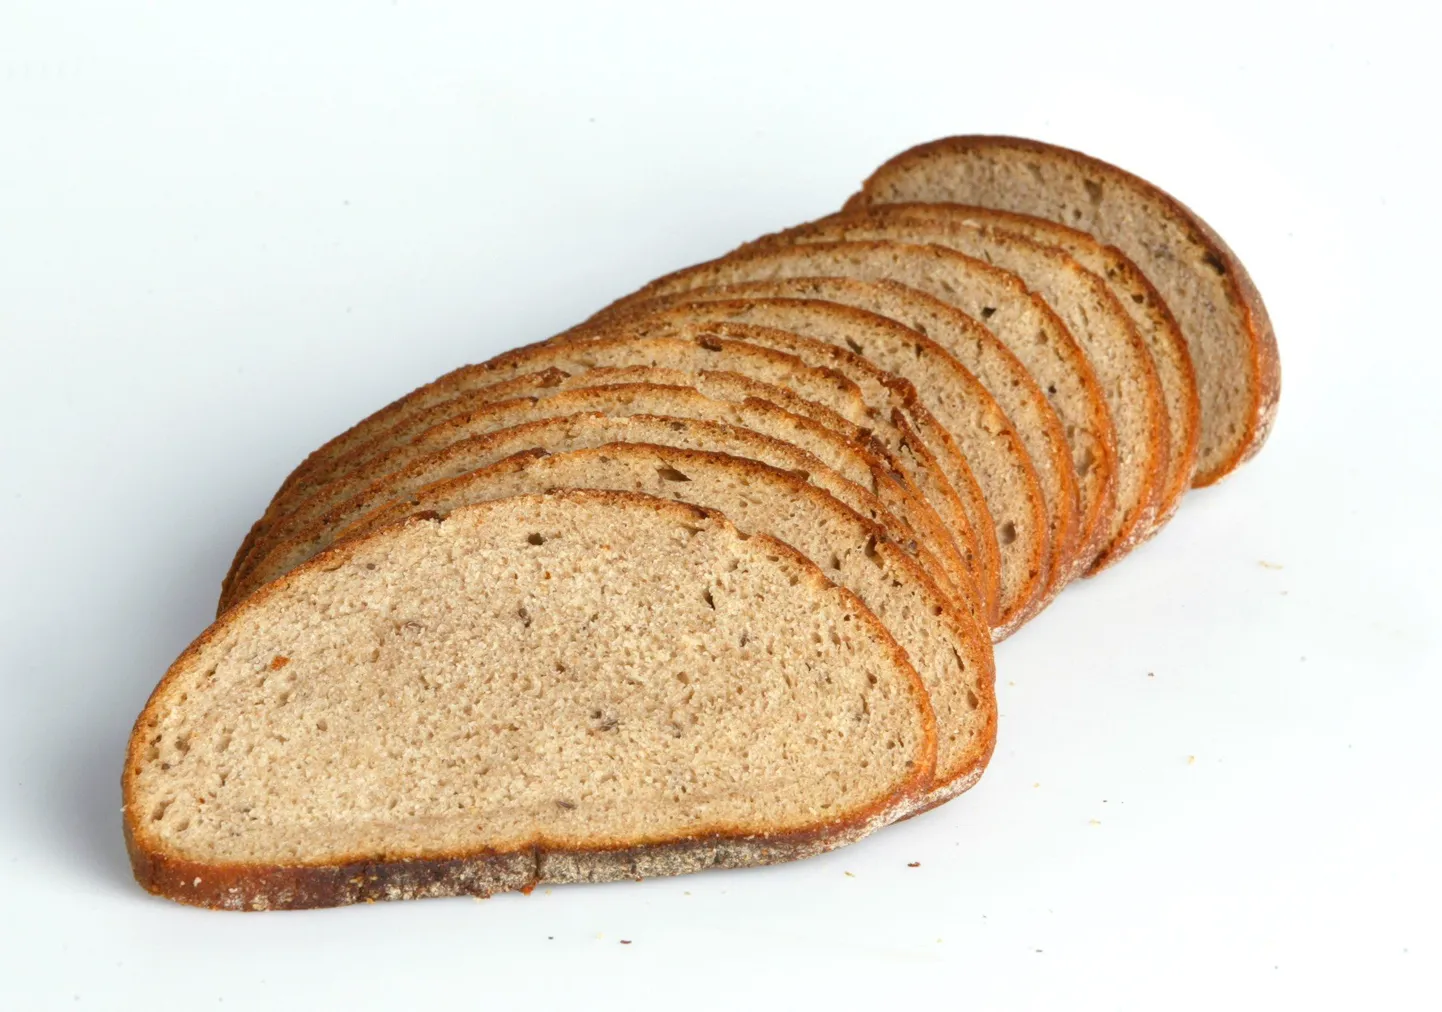 Eesti koolides läbi viidud pagaritoodete tarbimist käsitlevast uuringust selgus, et õpilased eelistavad kõige enam peenleiba.